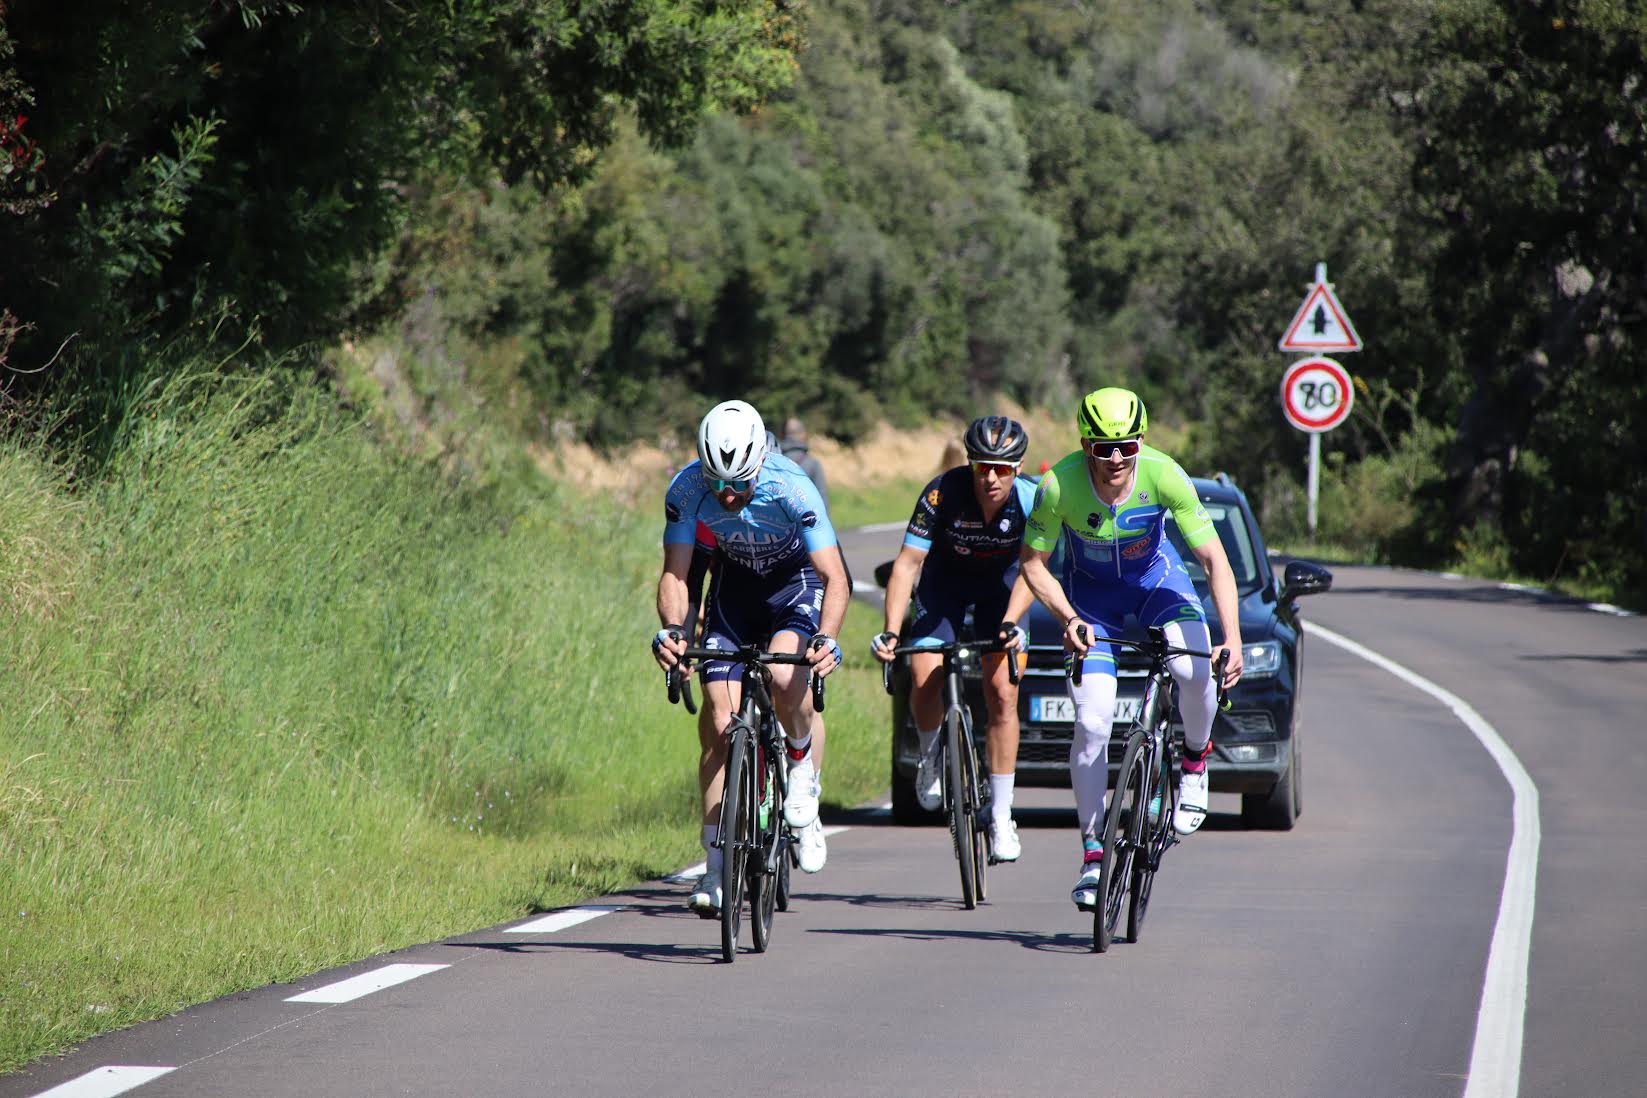 Cyclisme :  Julien Ricci a remporté le Grand Prix de Porto-Vecchio en solitaire